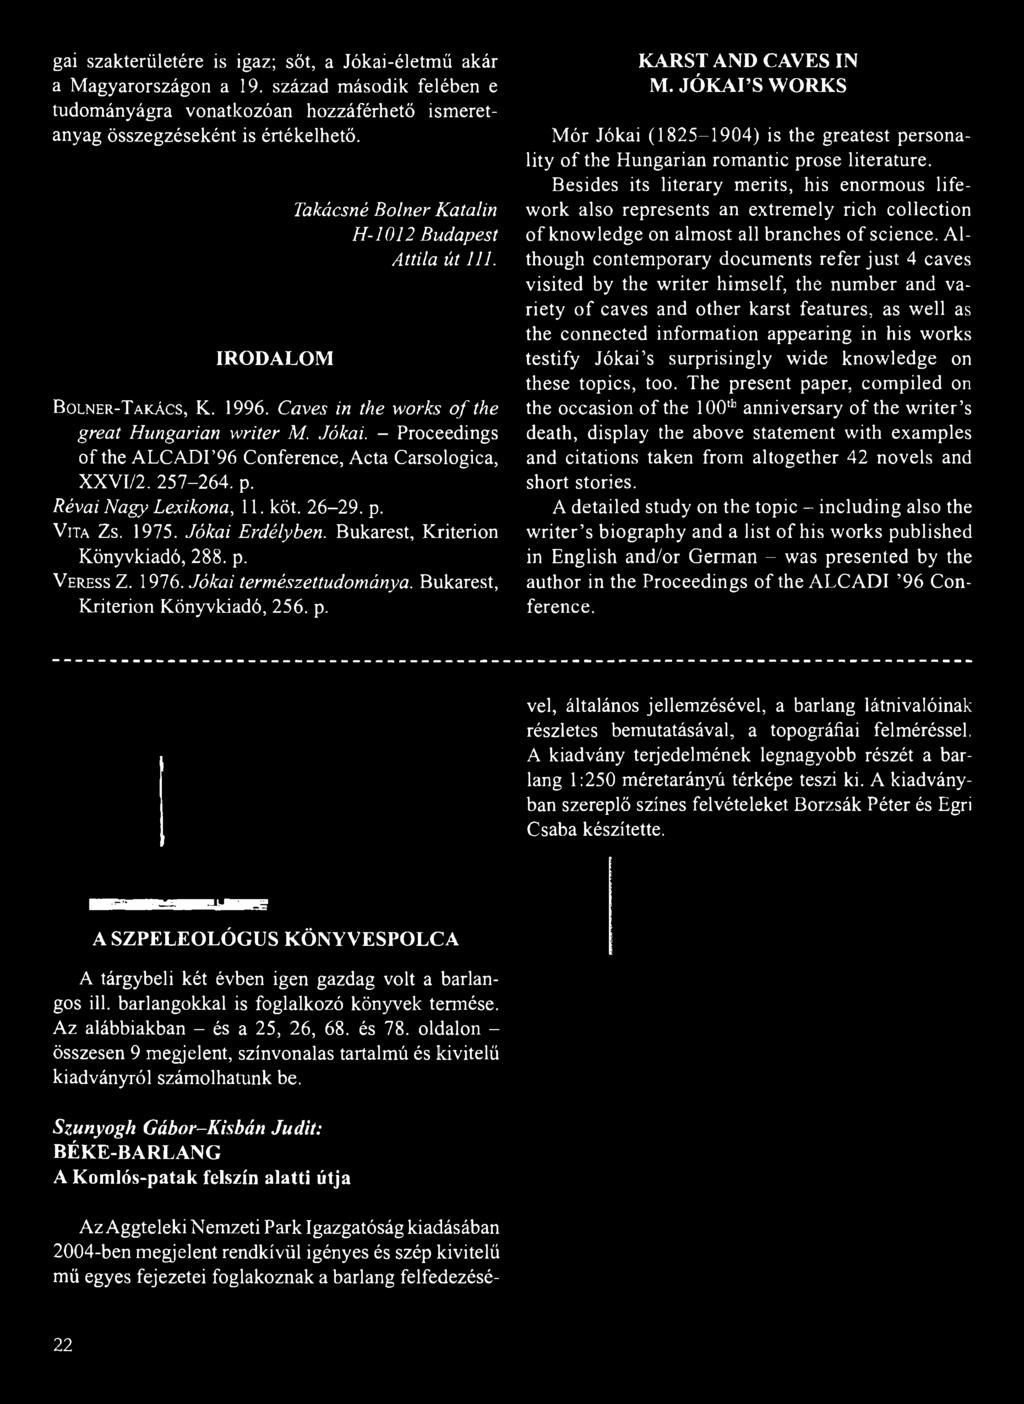 - Proceedings of the ALCADI 96 Conference, Acta Carsologica, XXVI/2. 257-264. p. Révai Nagy Lexikona, 11. köt. 26-29. p. V ita Z s. 1975. Jókai Erdélyben. Bukarest, Kriterion Könyvkiadó, 288. p. V eress Z.